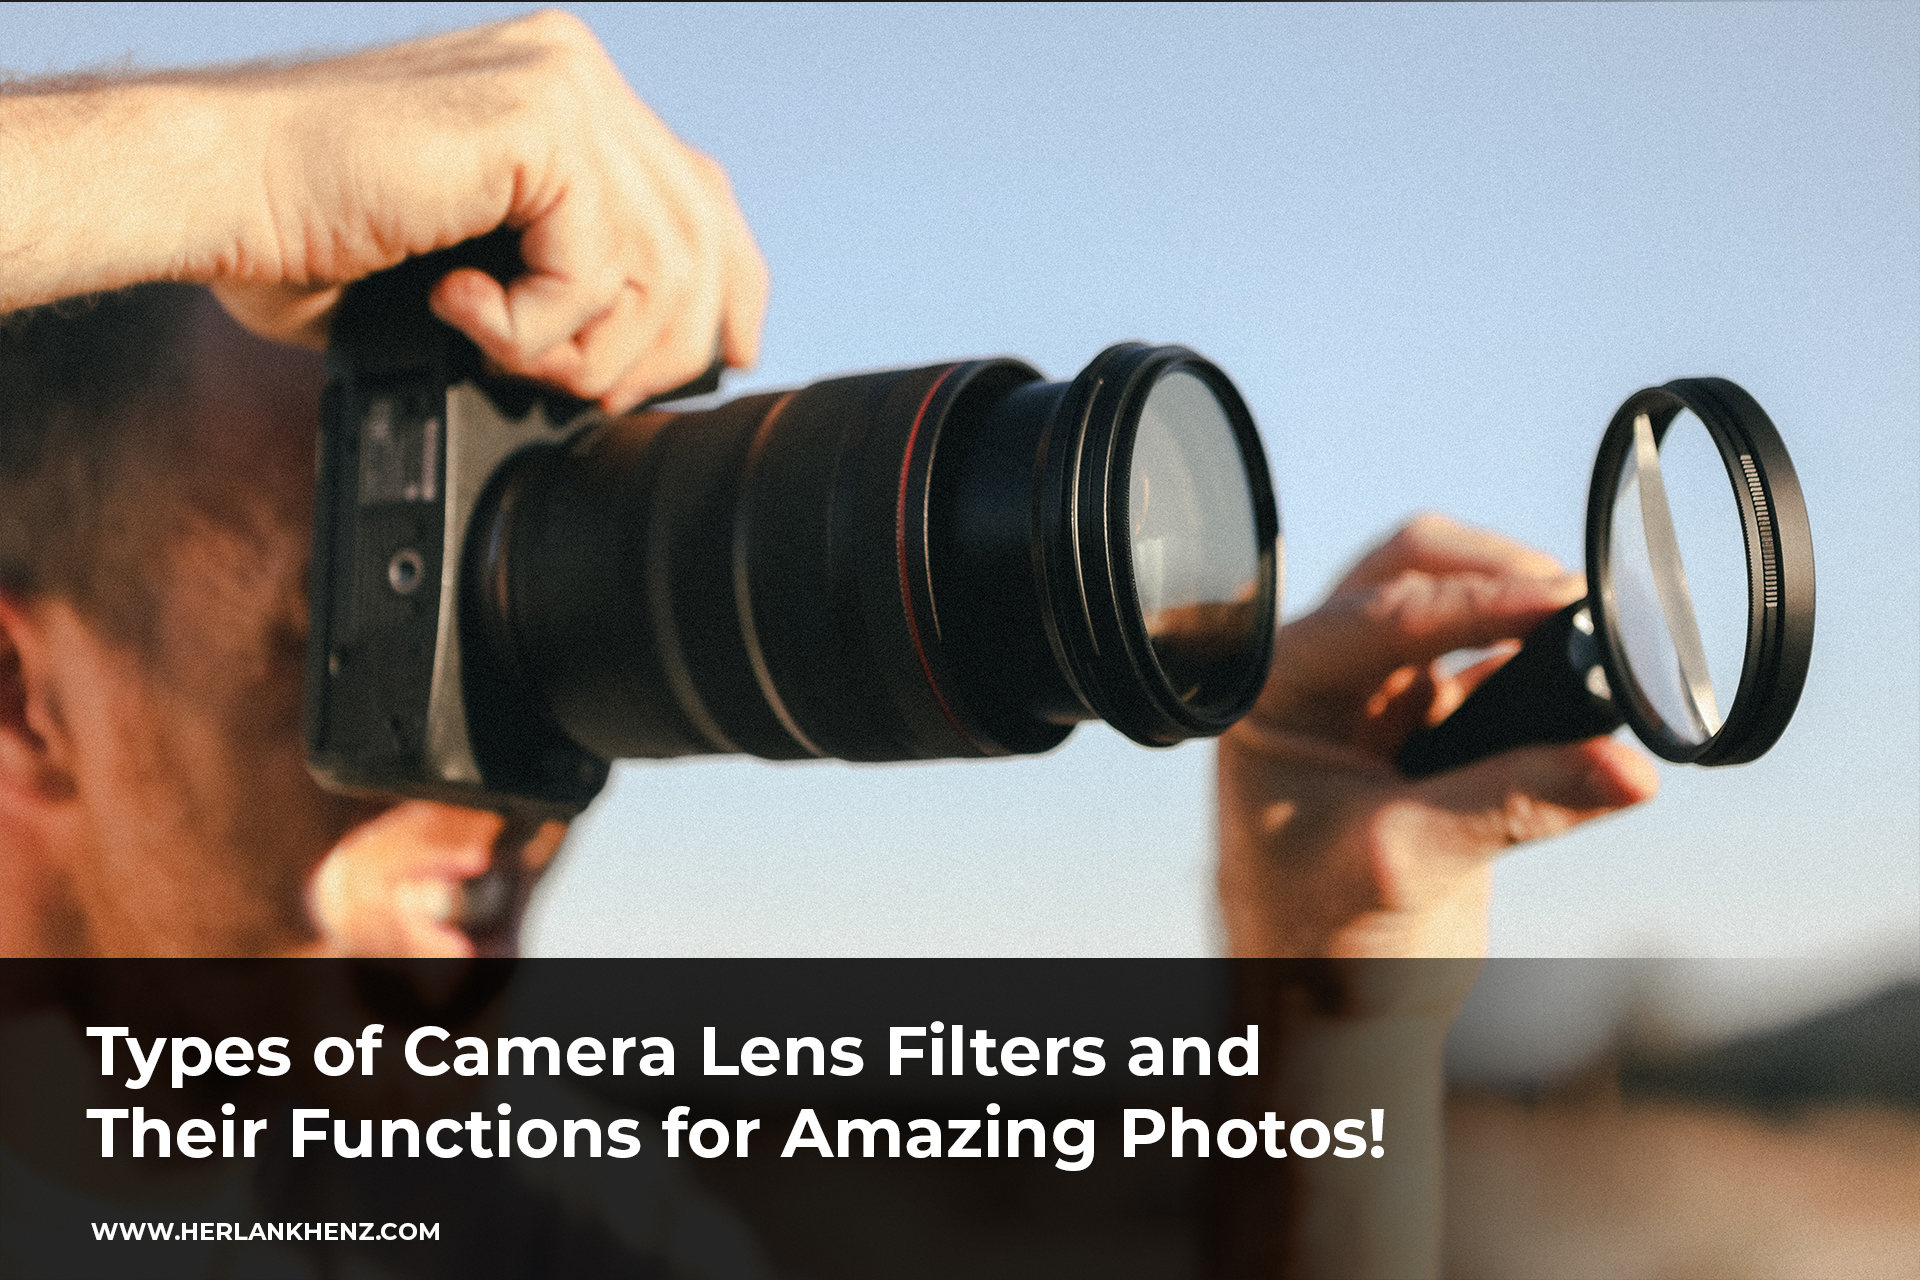 Conheça os tipos de filtros de lente de câmera e suas funções para fotos incríveis!